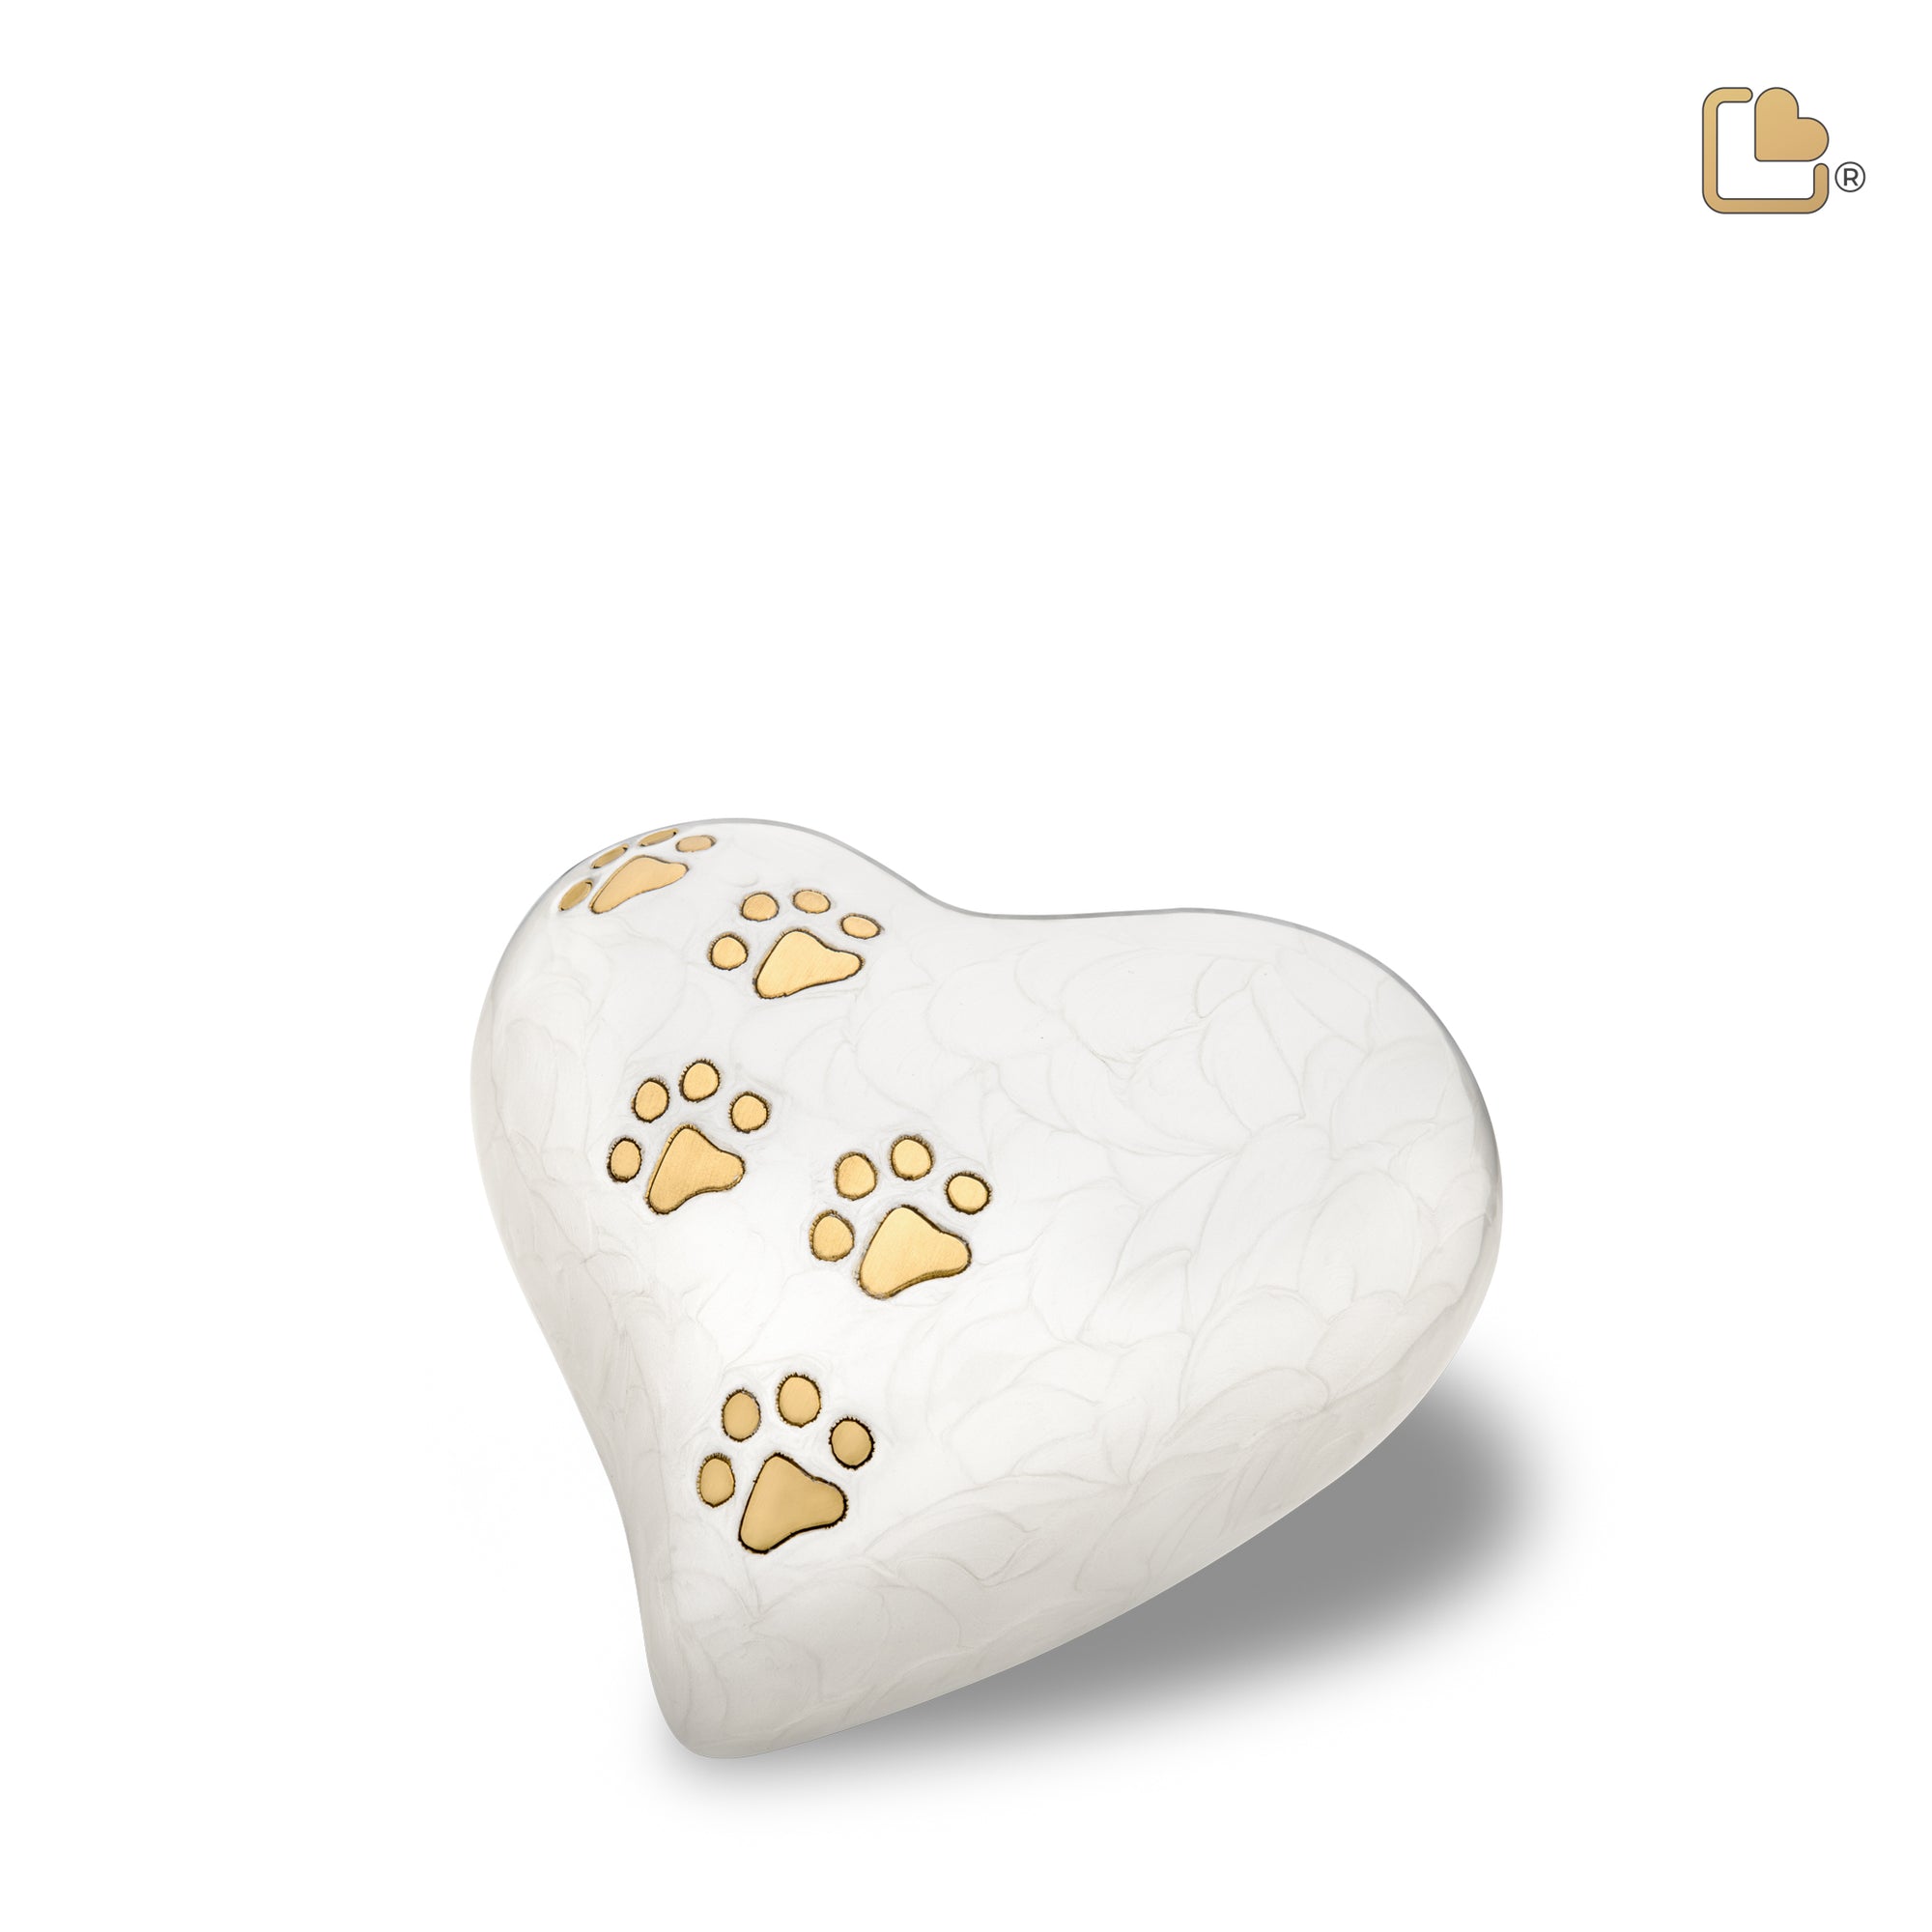 P638M   Medium Heart Pet Urn Pearl White & Bru Gold